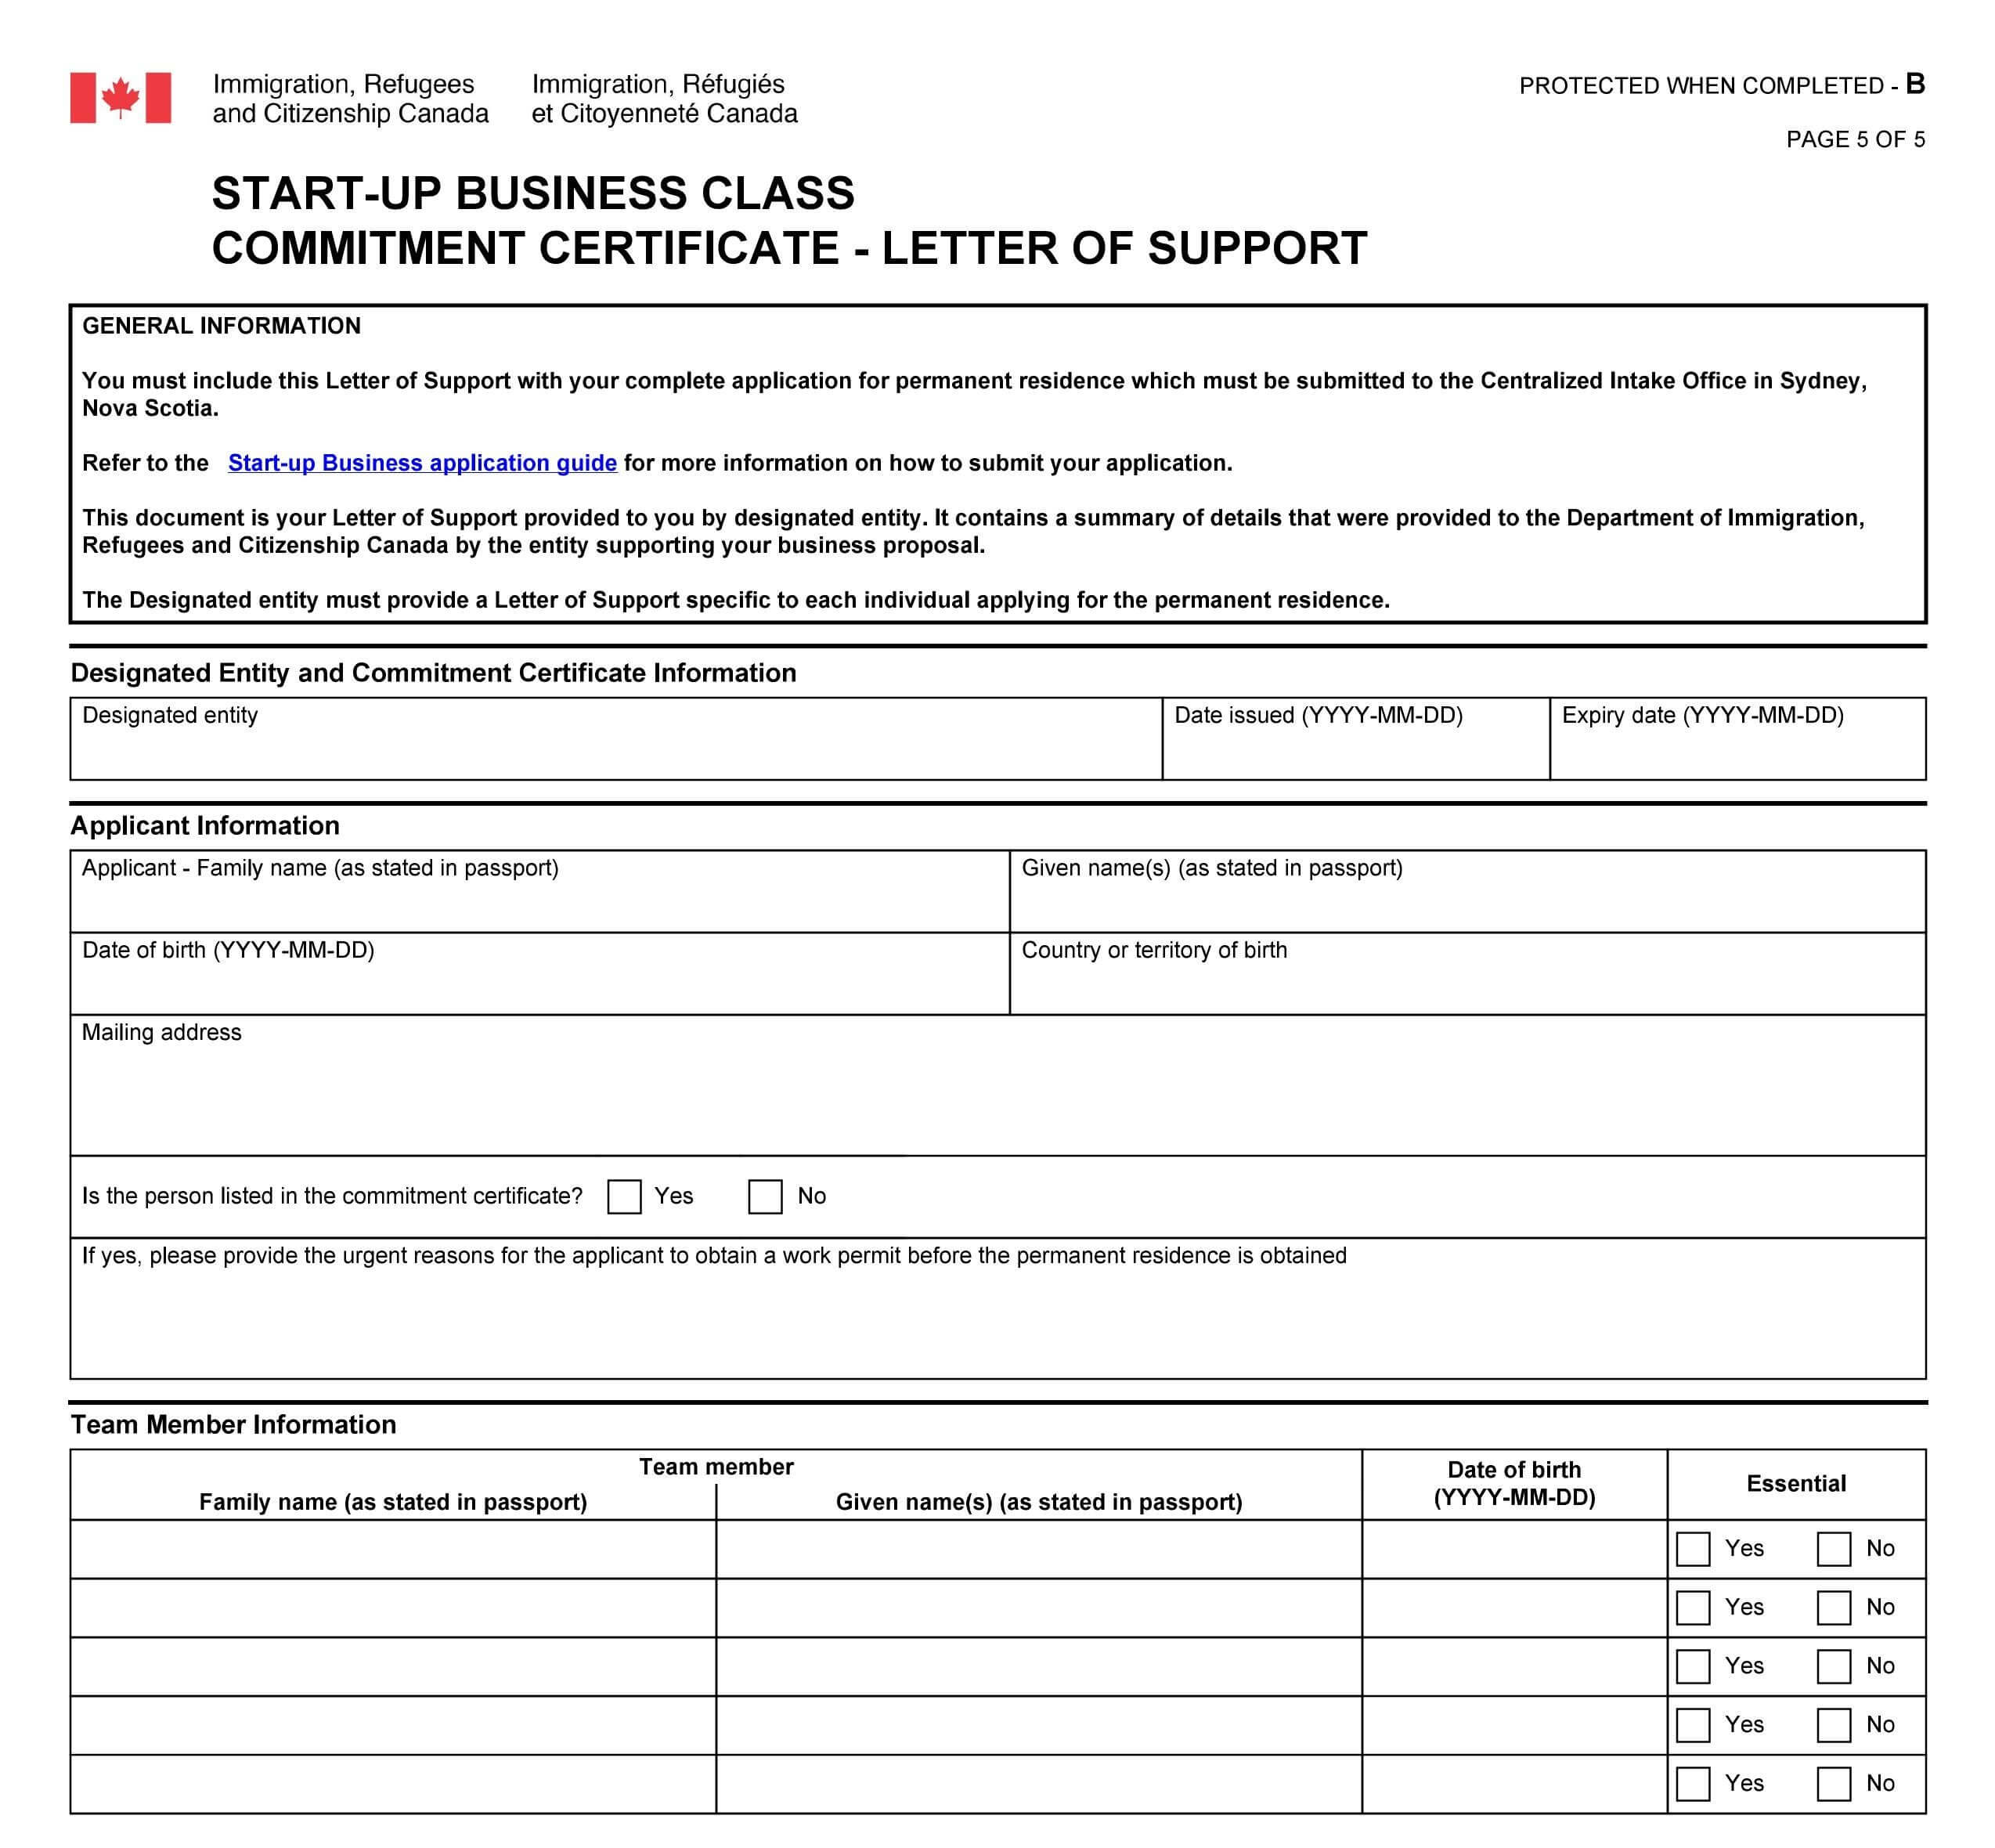 نامه letter of support برای دریافت استارتاپ ویزا کانادا